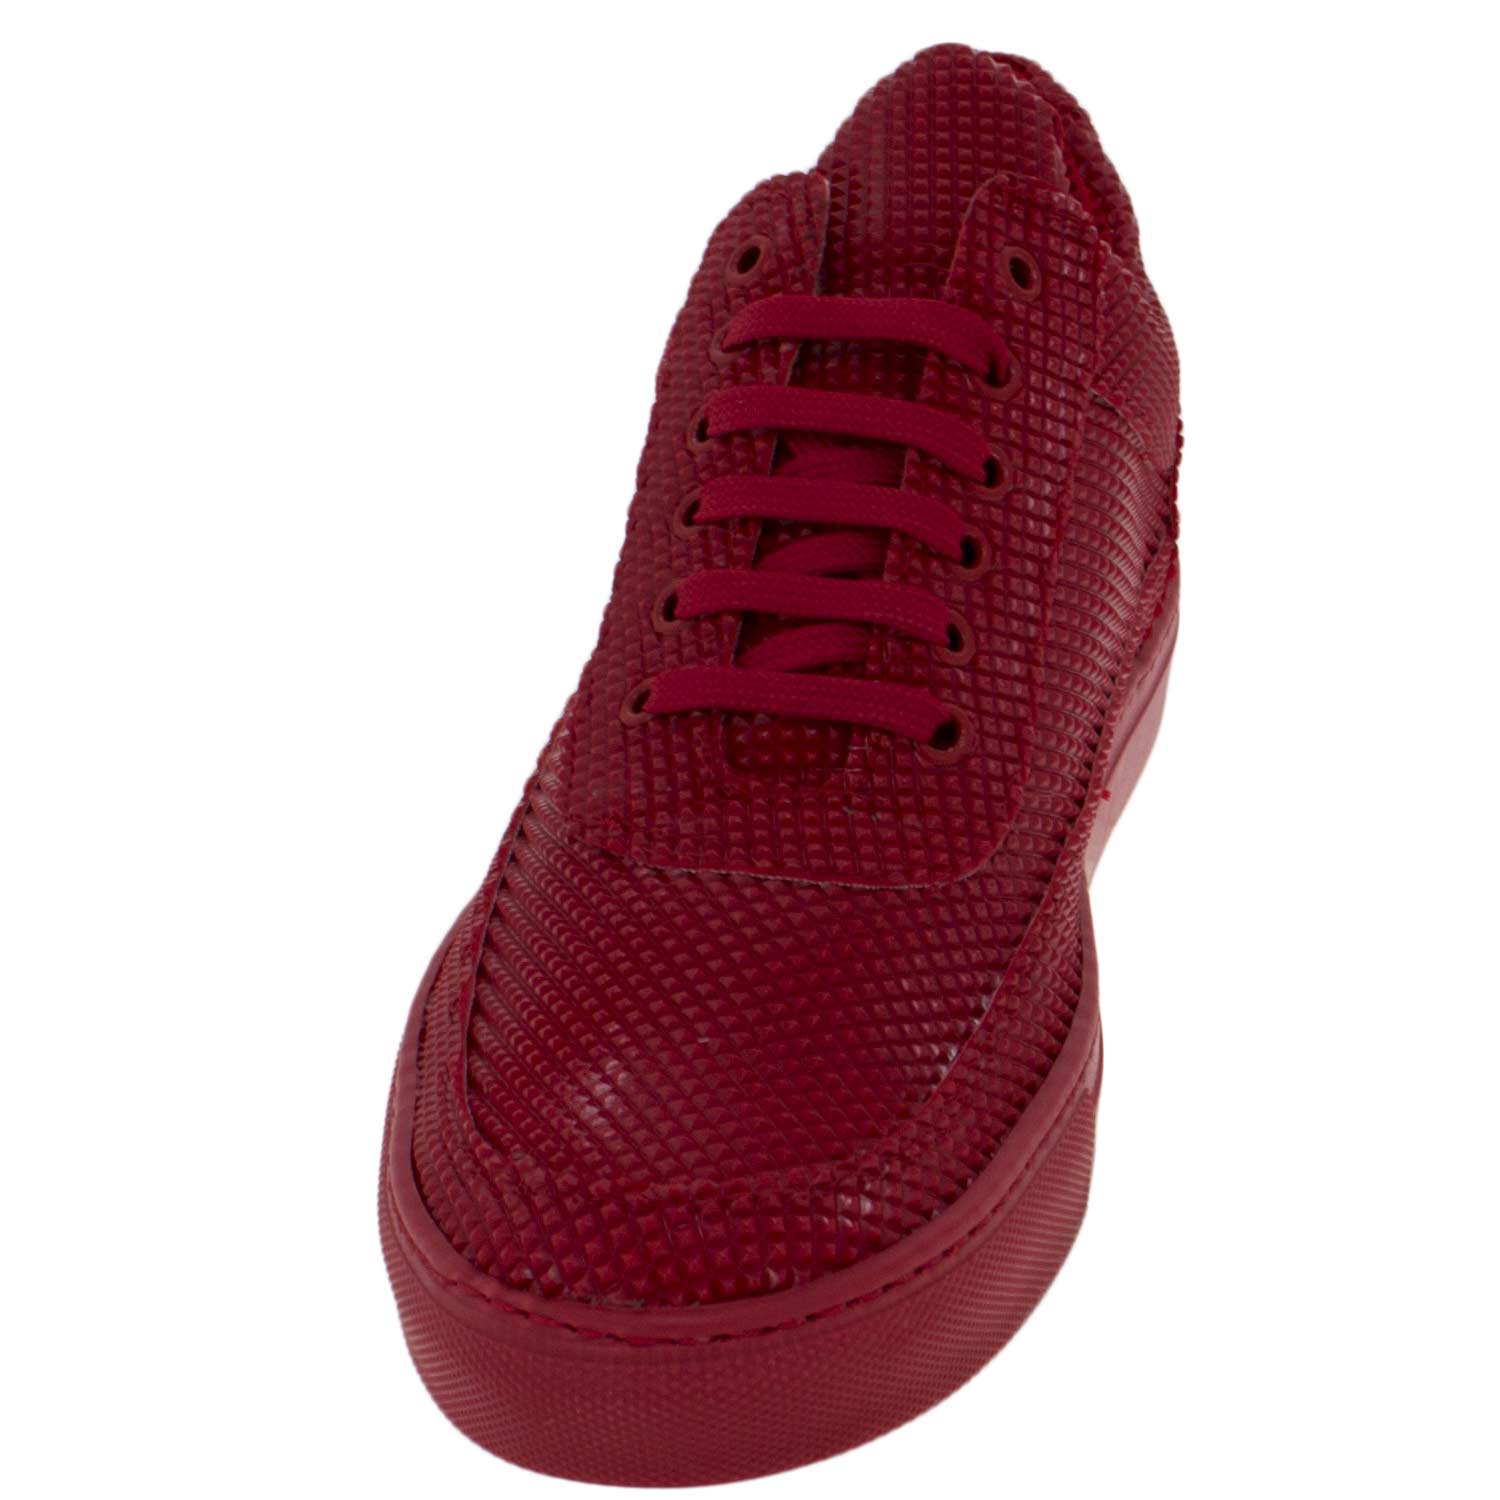 Sneakers bassa uomo scarpe calzature modello phil dettaglio piramide ...